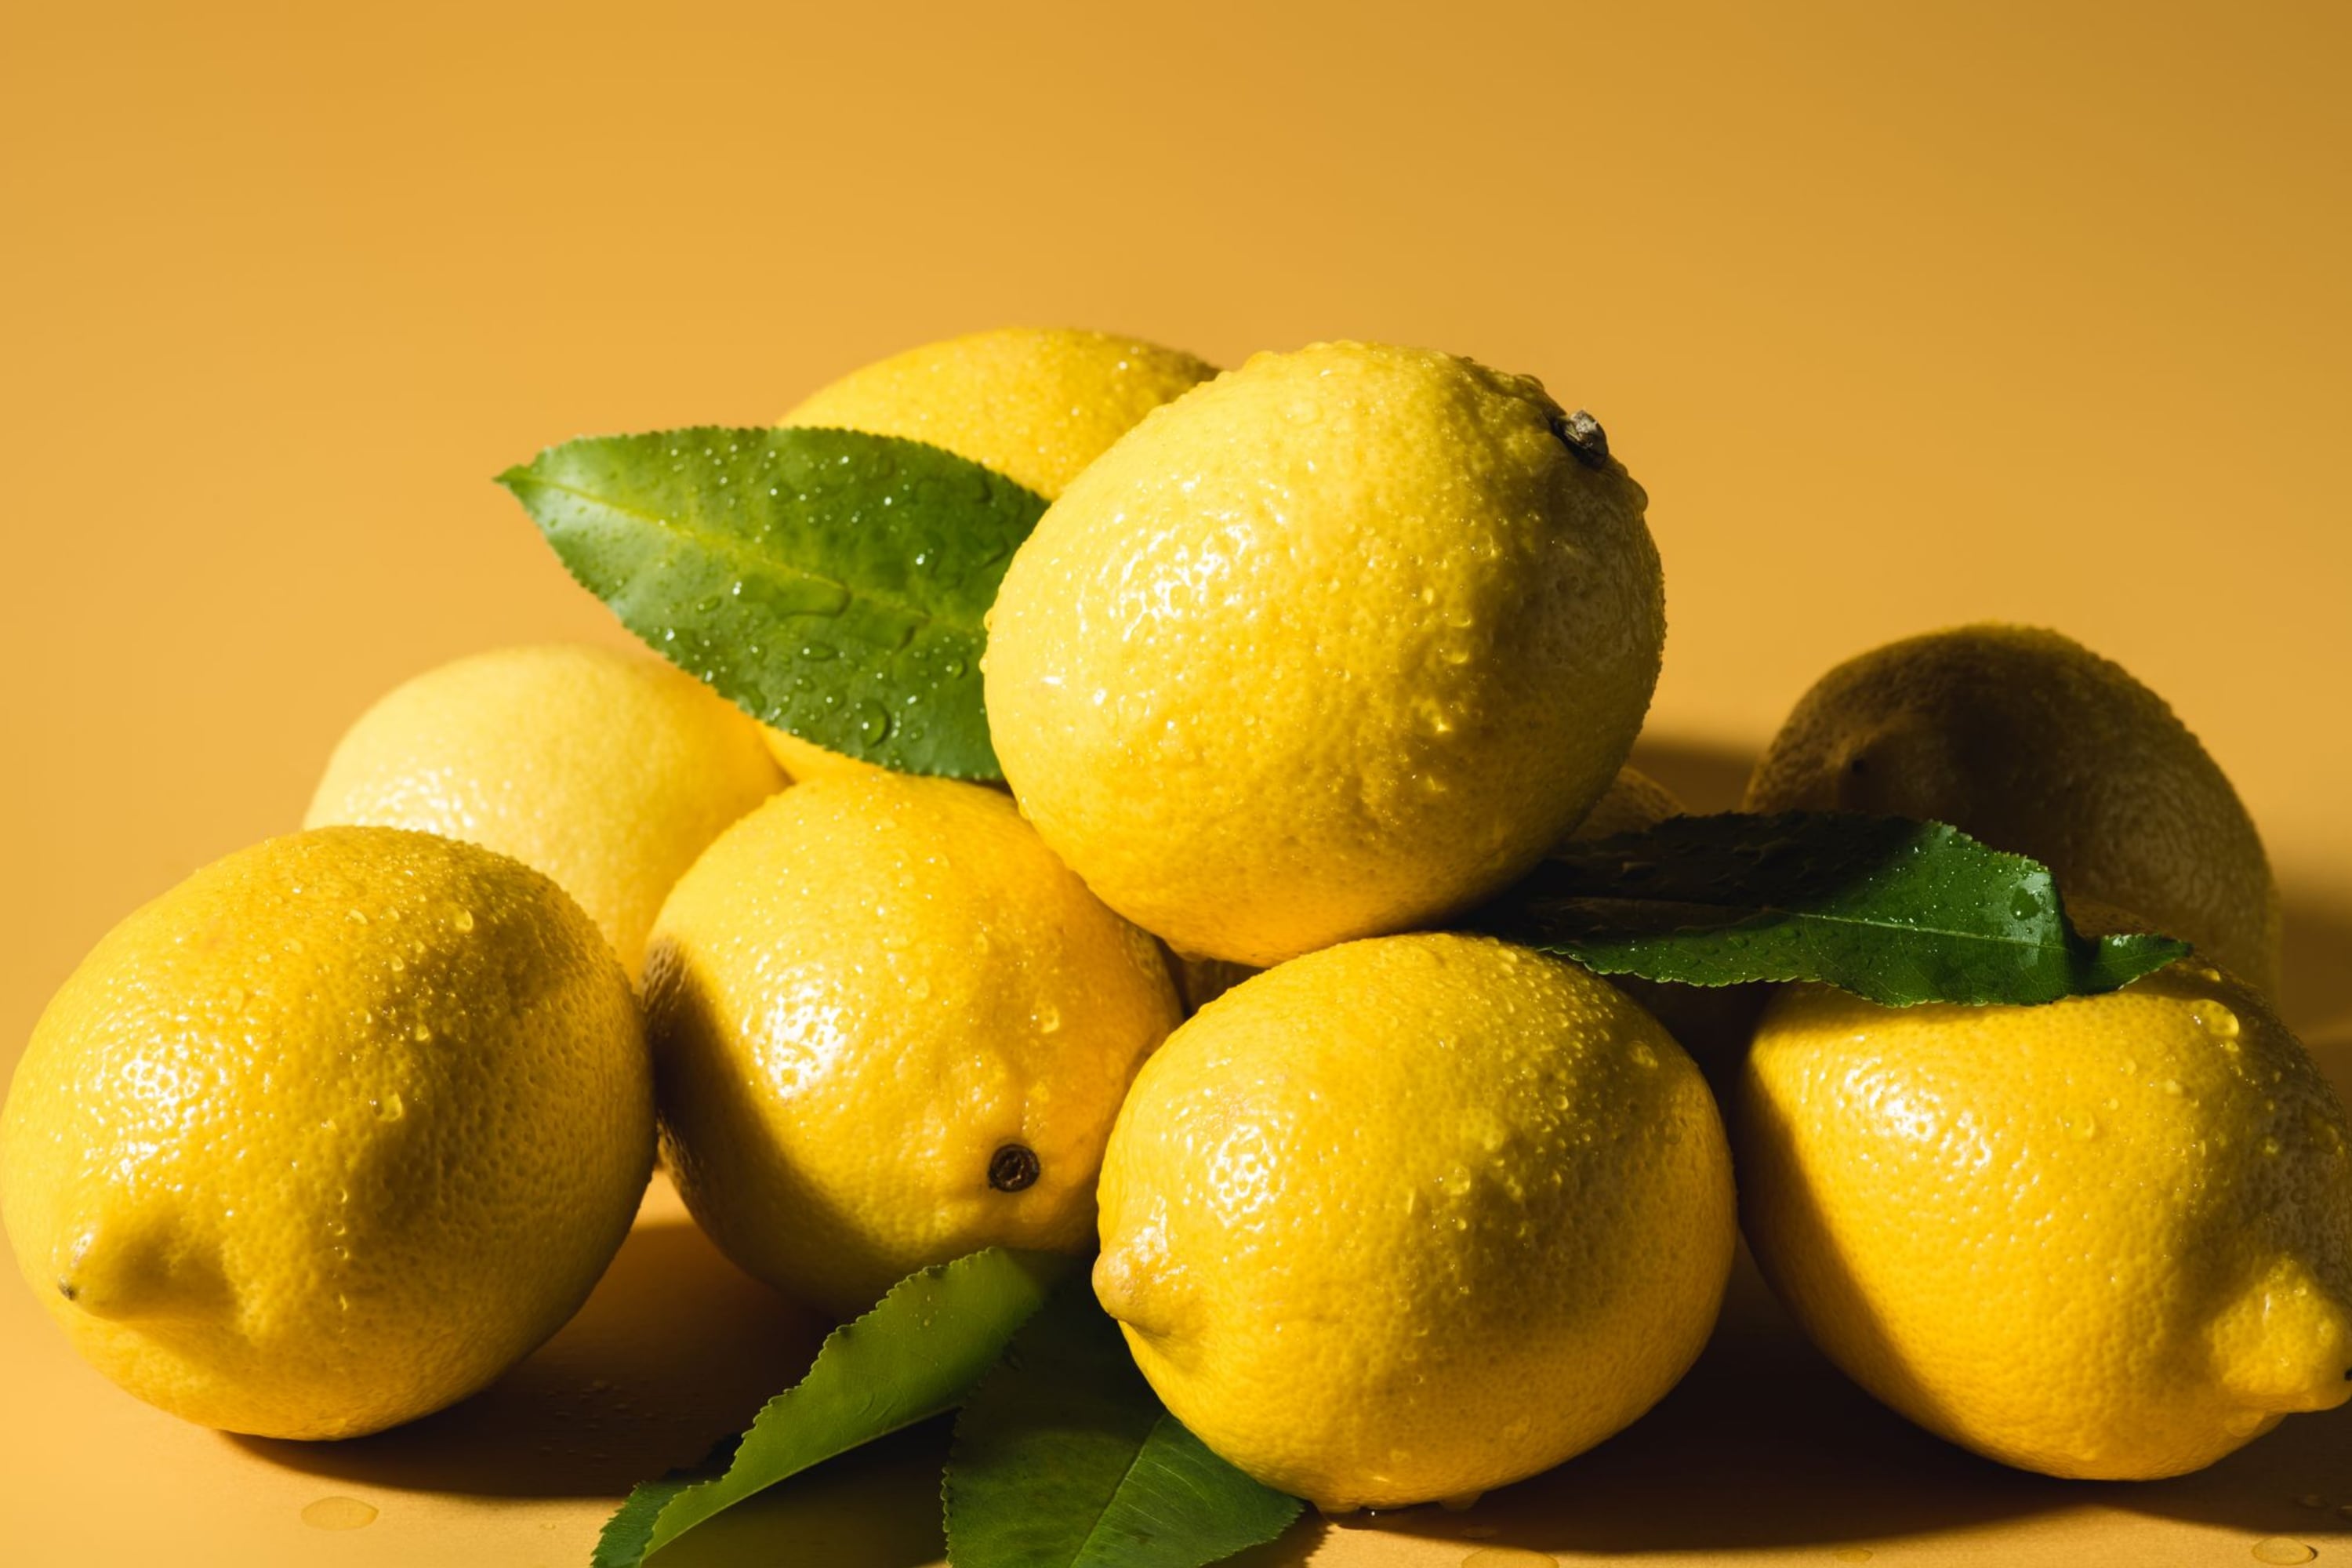 Make Use Of a Lemon!